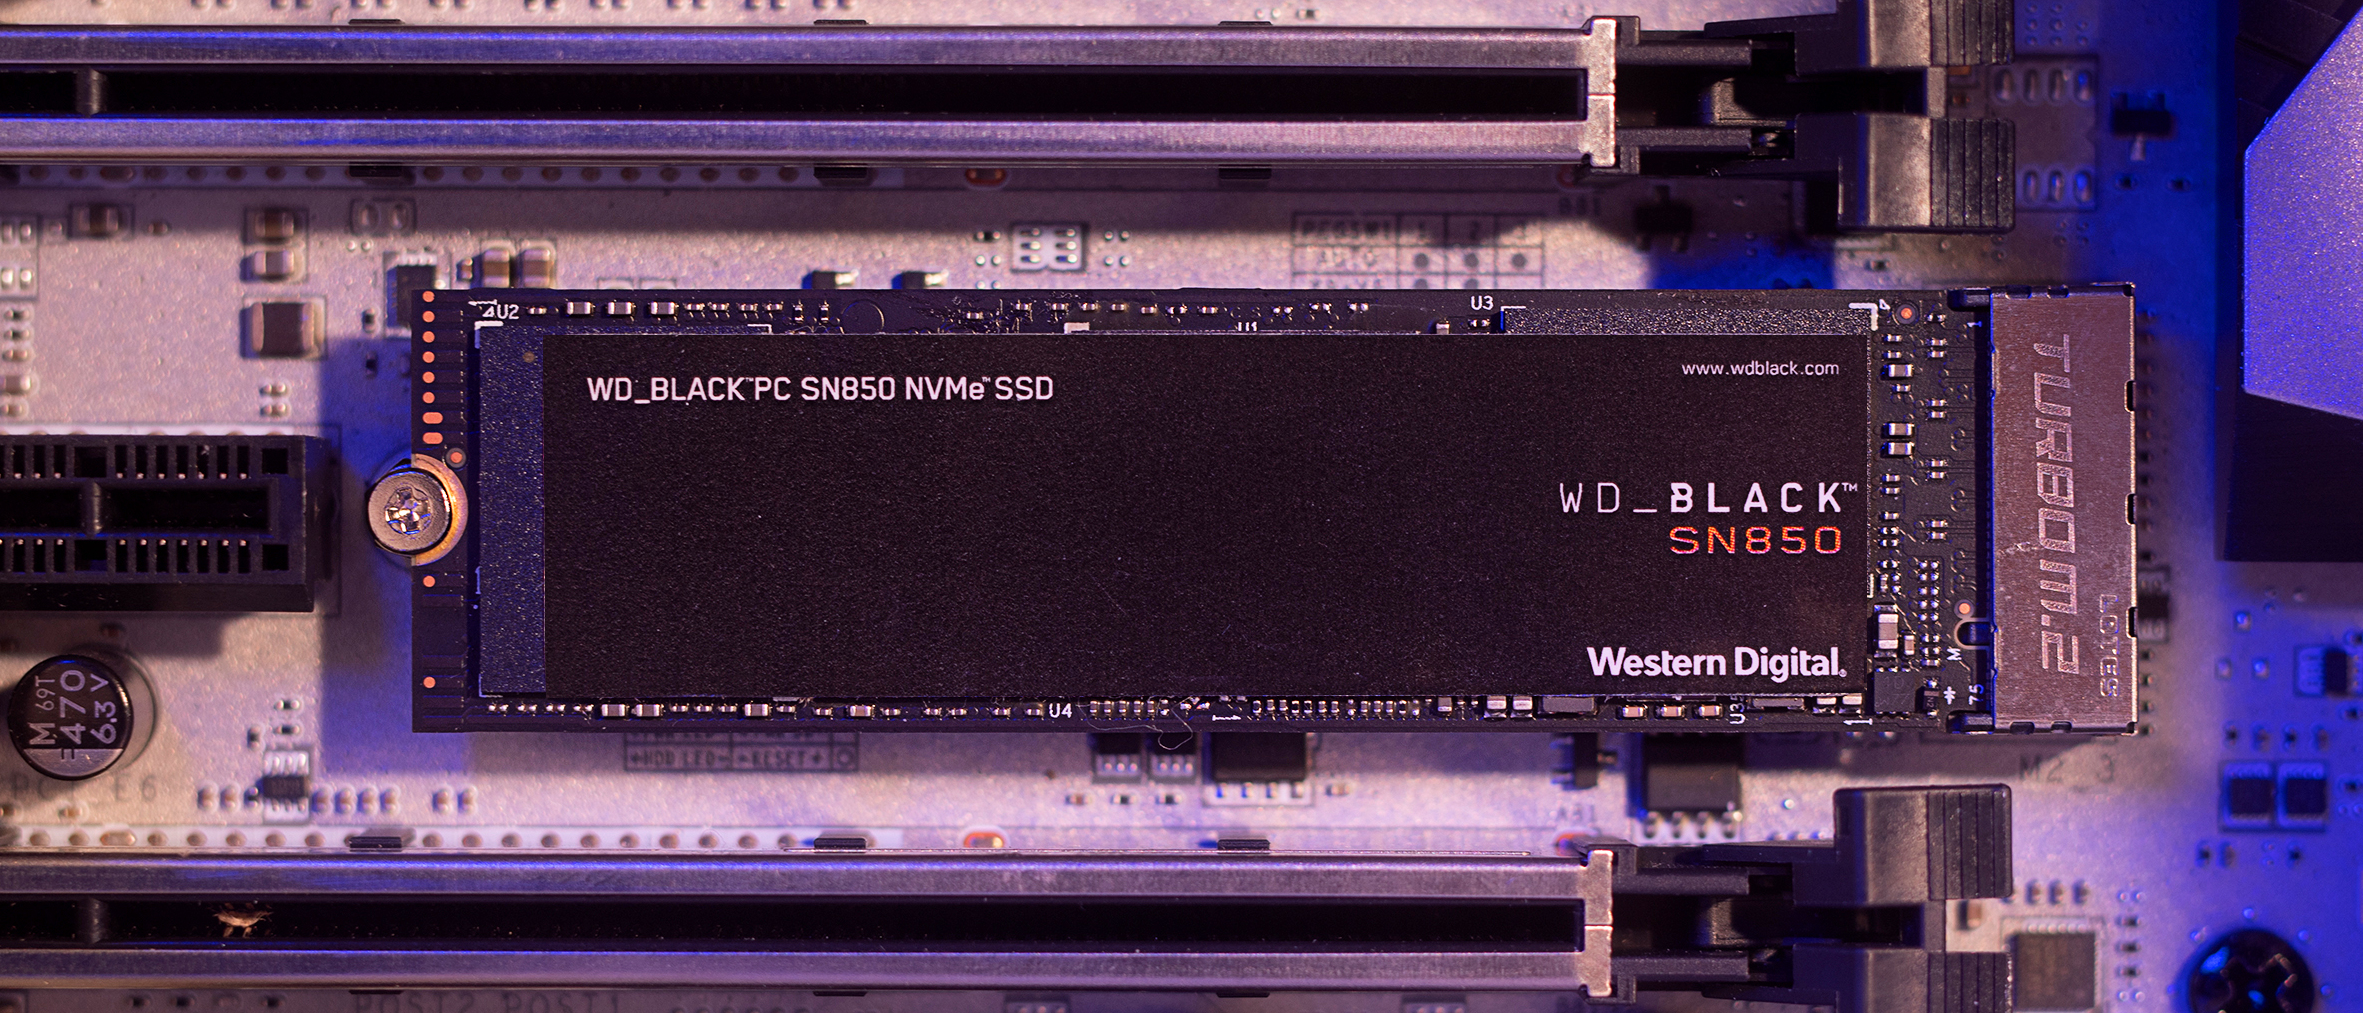 Wd Black Sn850 Nvme Ssd Review Techradar